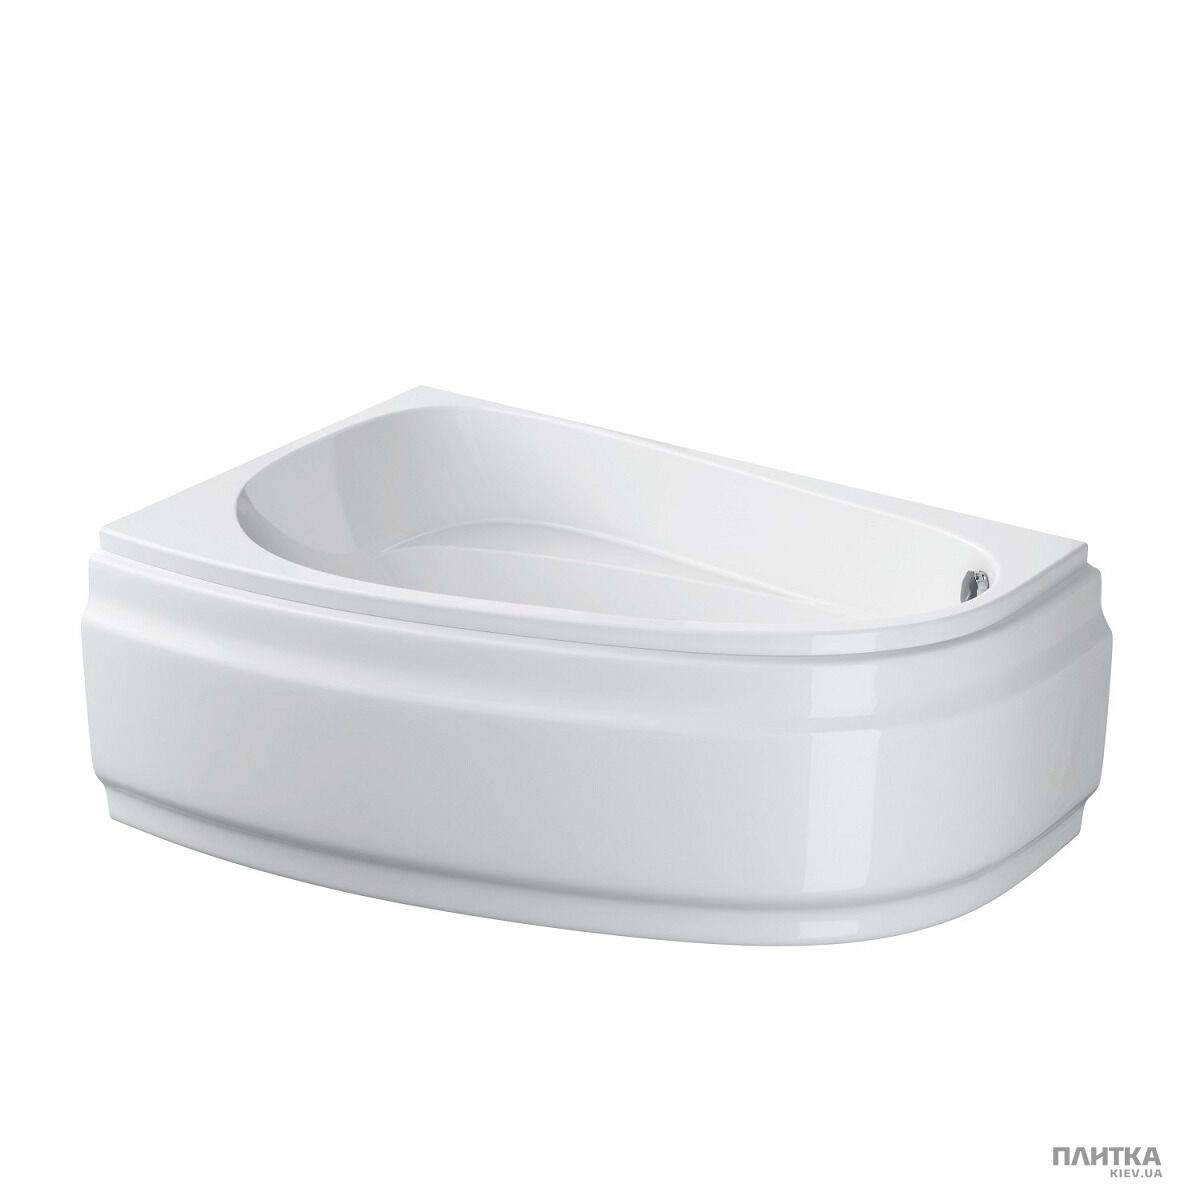 Акриловая ванна Cersanit Joanna New 150x95 см левая, асимметричная белый